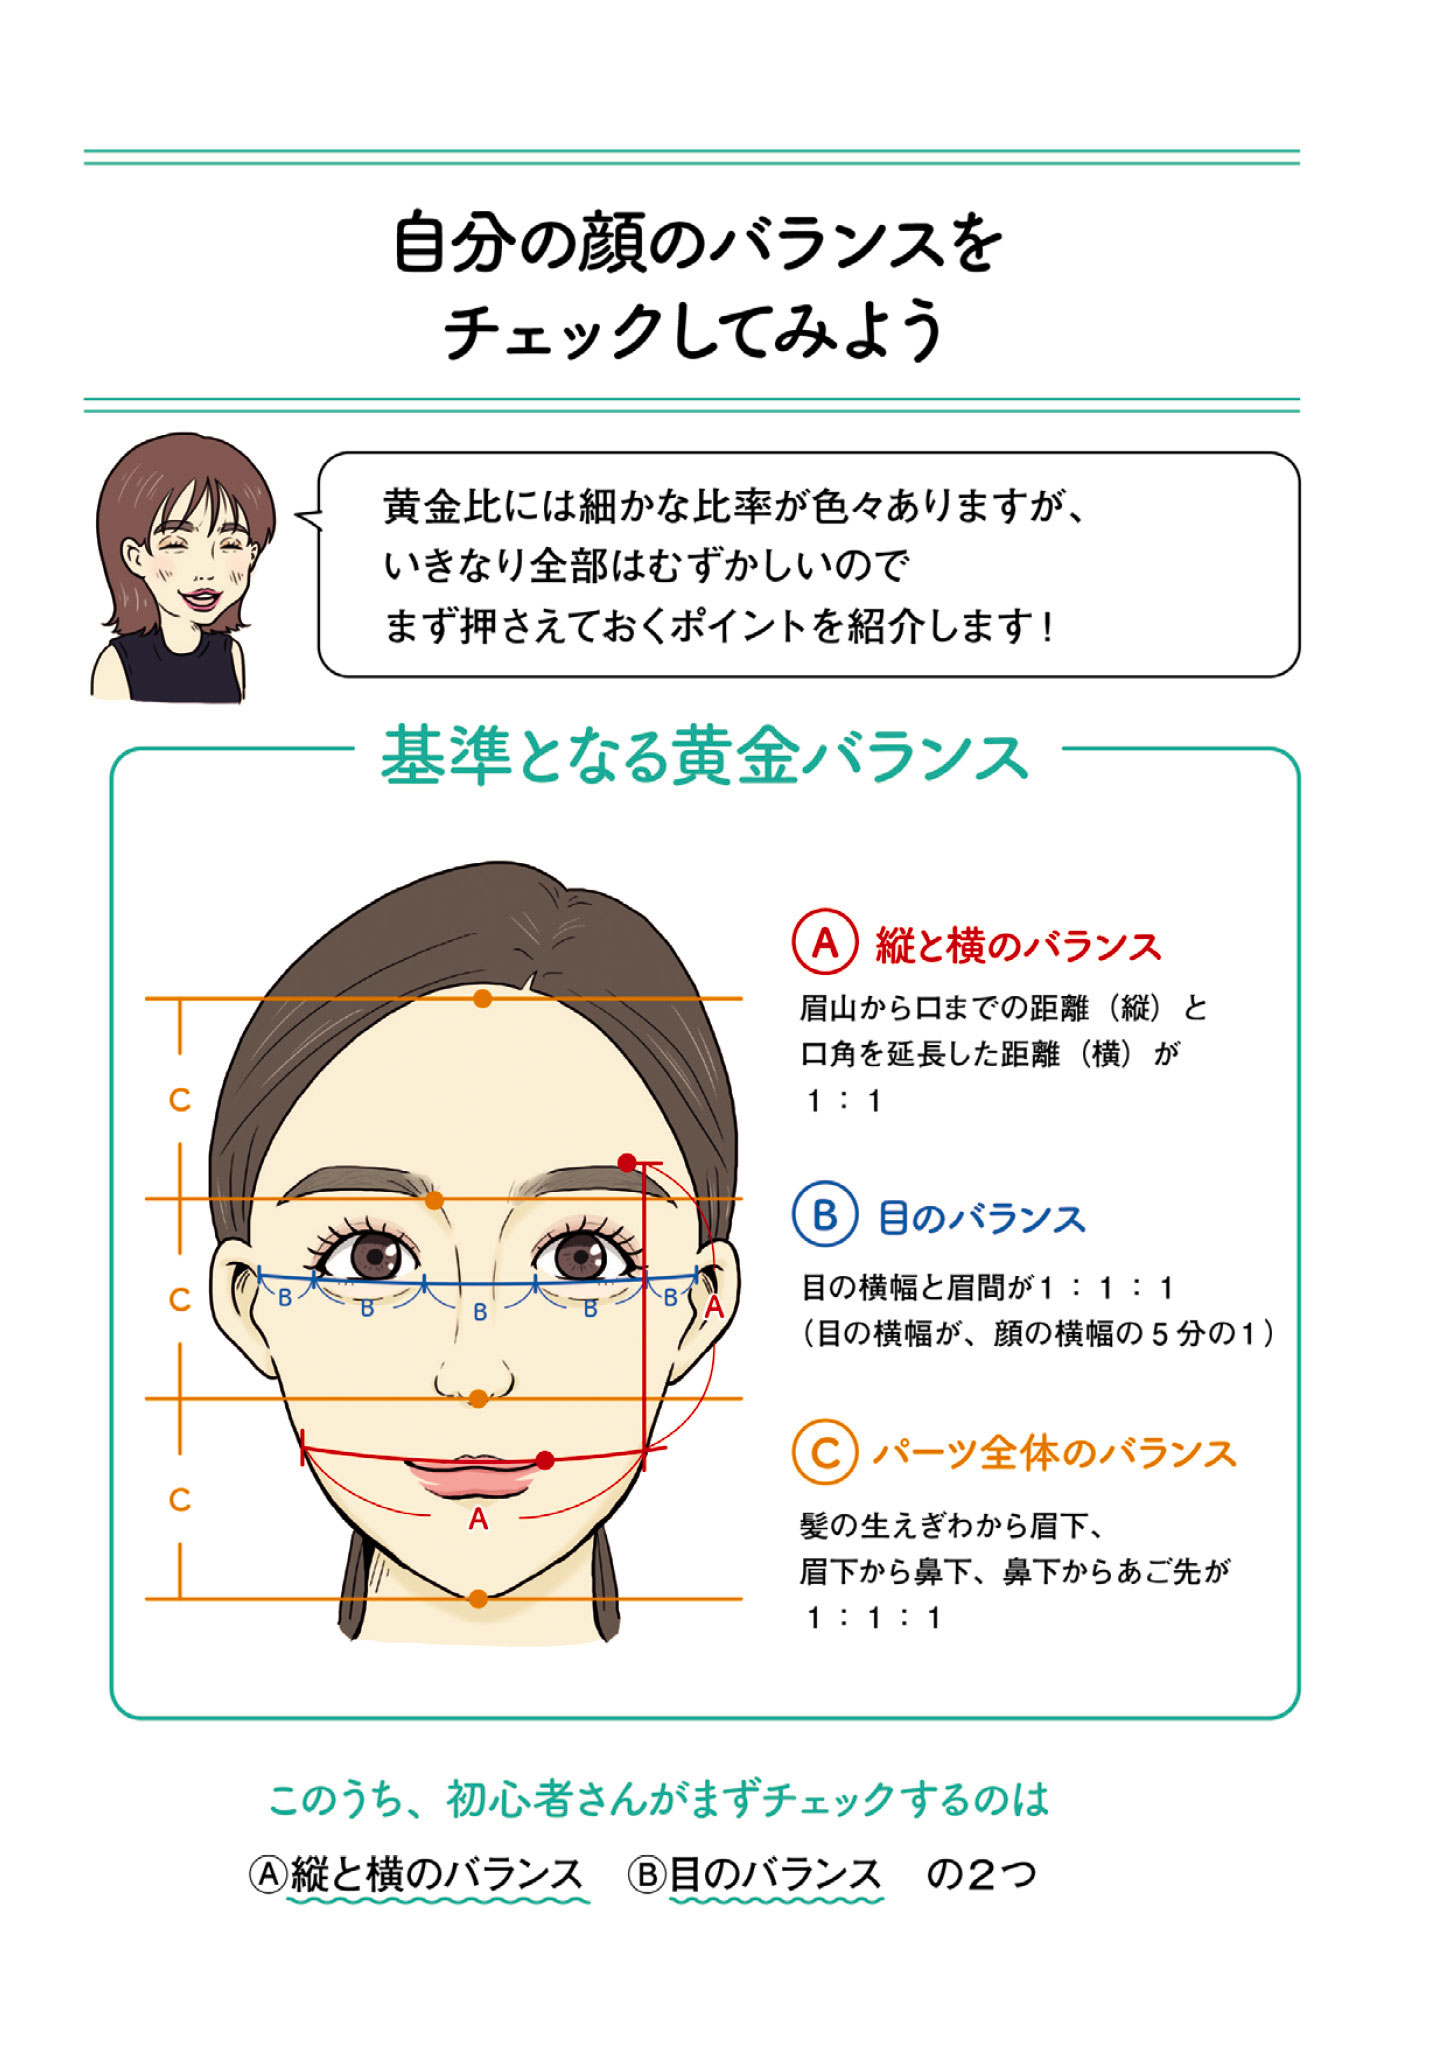 あなたは求心顔 遠心顔 顔のパーツを測って 顔タイプ診断ができる 自分の顔タイプを知って 自分に合ったメイク法を見つけよう